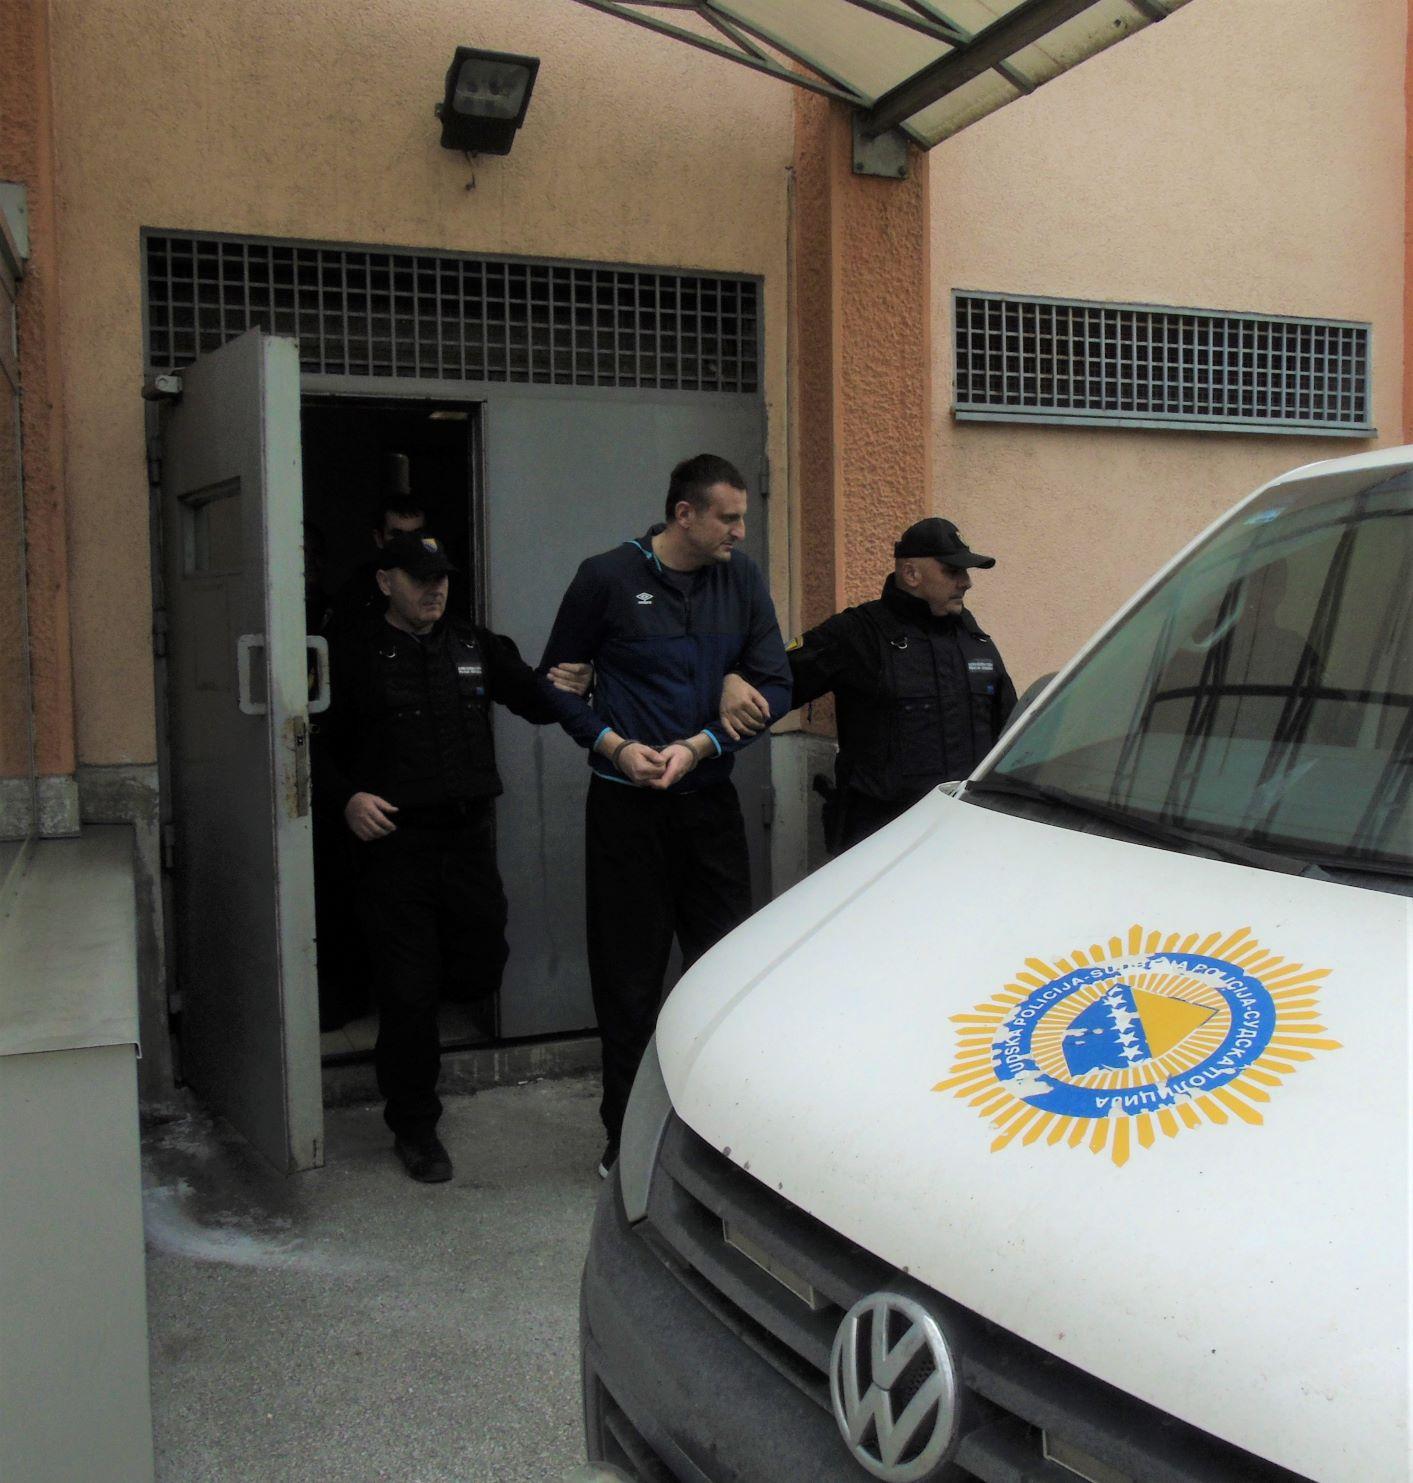 Railiću, Miljatoviću i Repajiću produžen pritvor do izricanja prvostepene presude